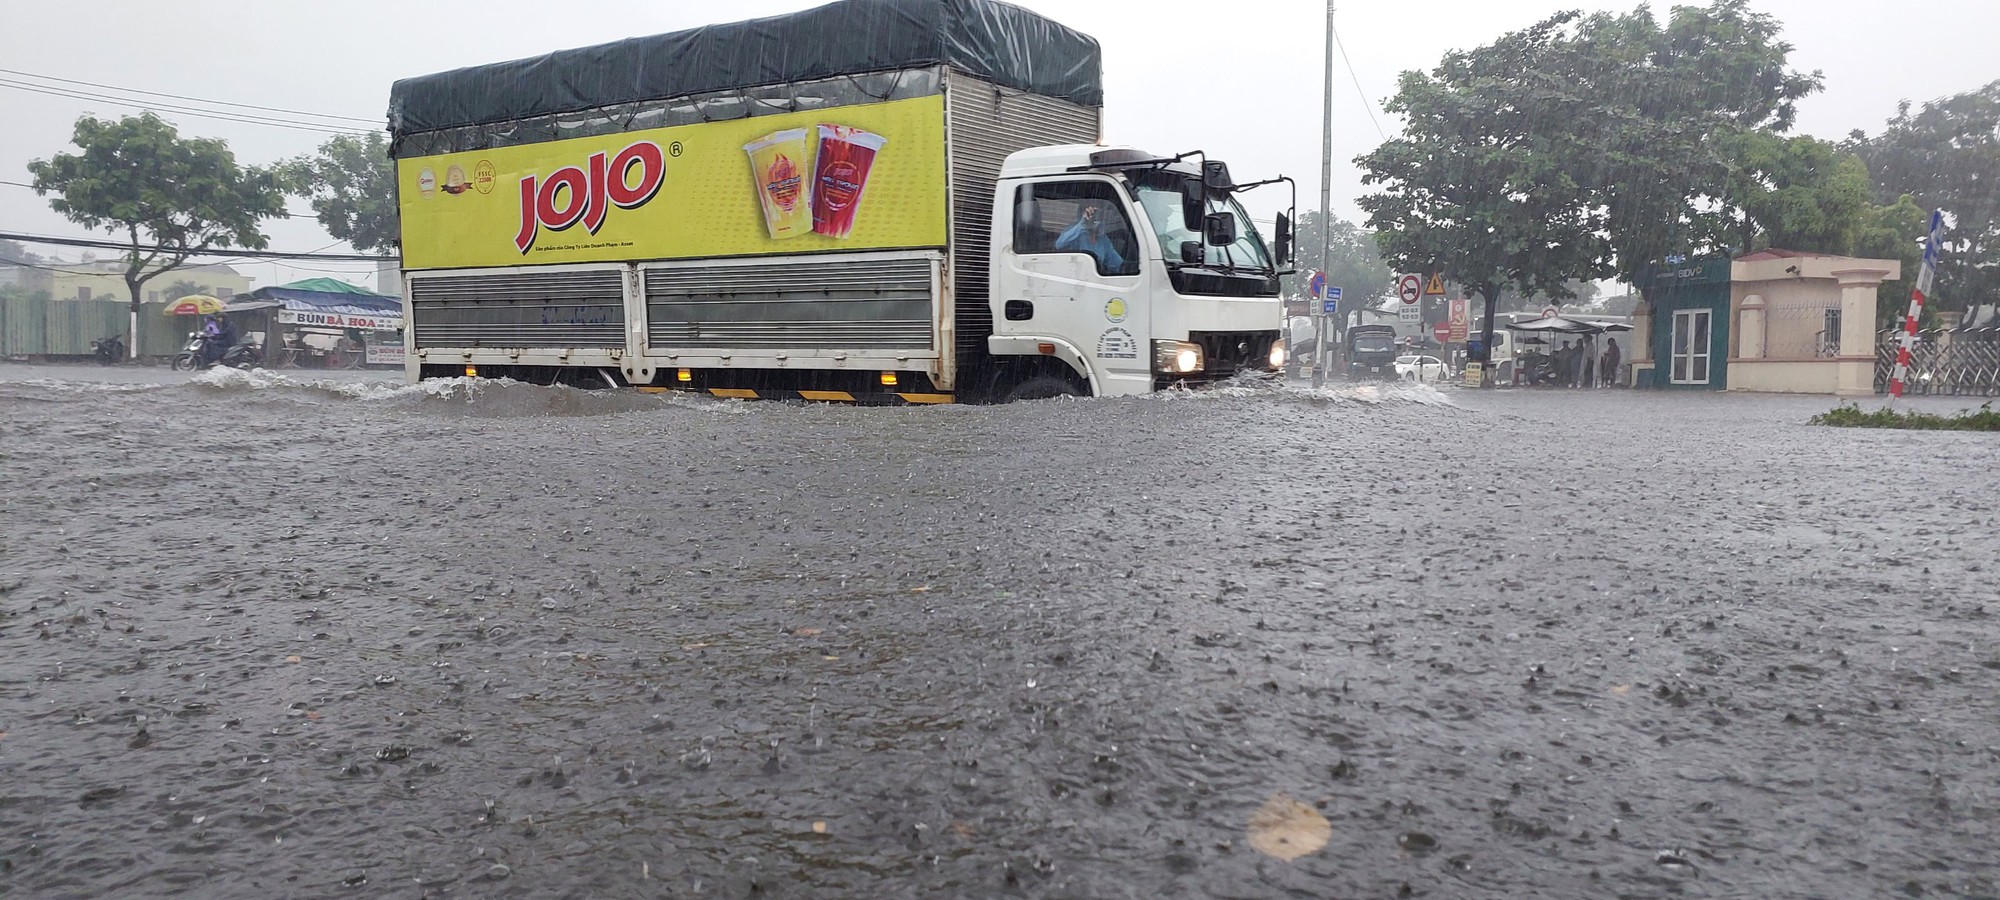 Đường phố Đà Nẵng lại ngập sau mưa lớn, ô tô, xe máy bì bõm lội nước - Ảnh 3.